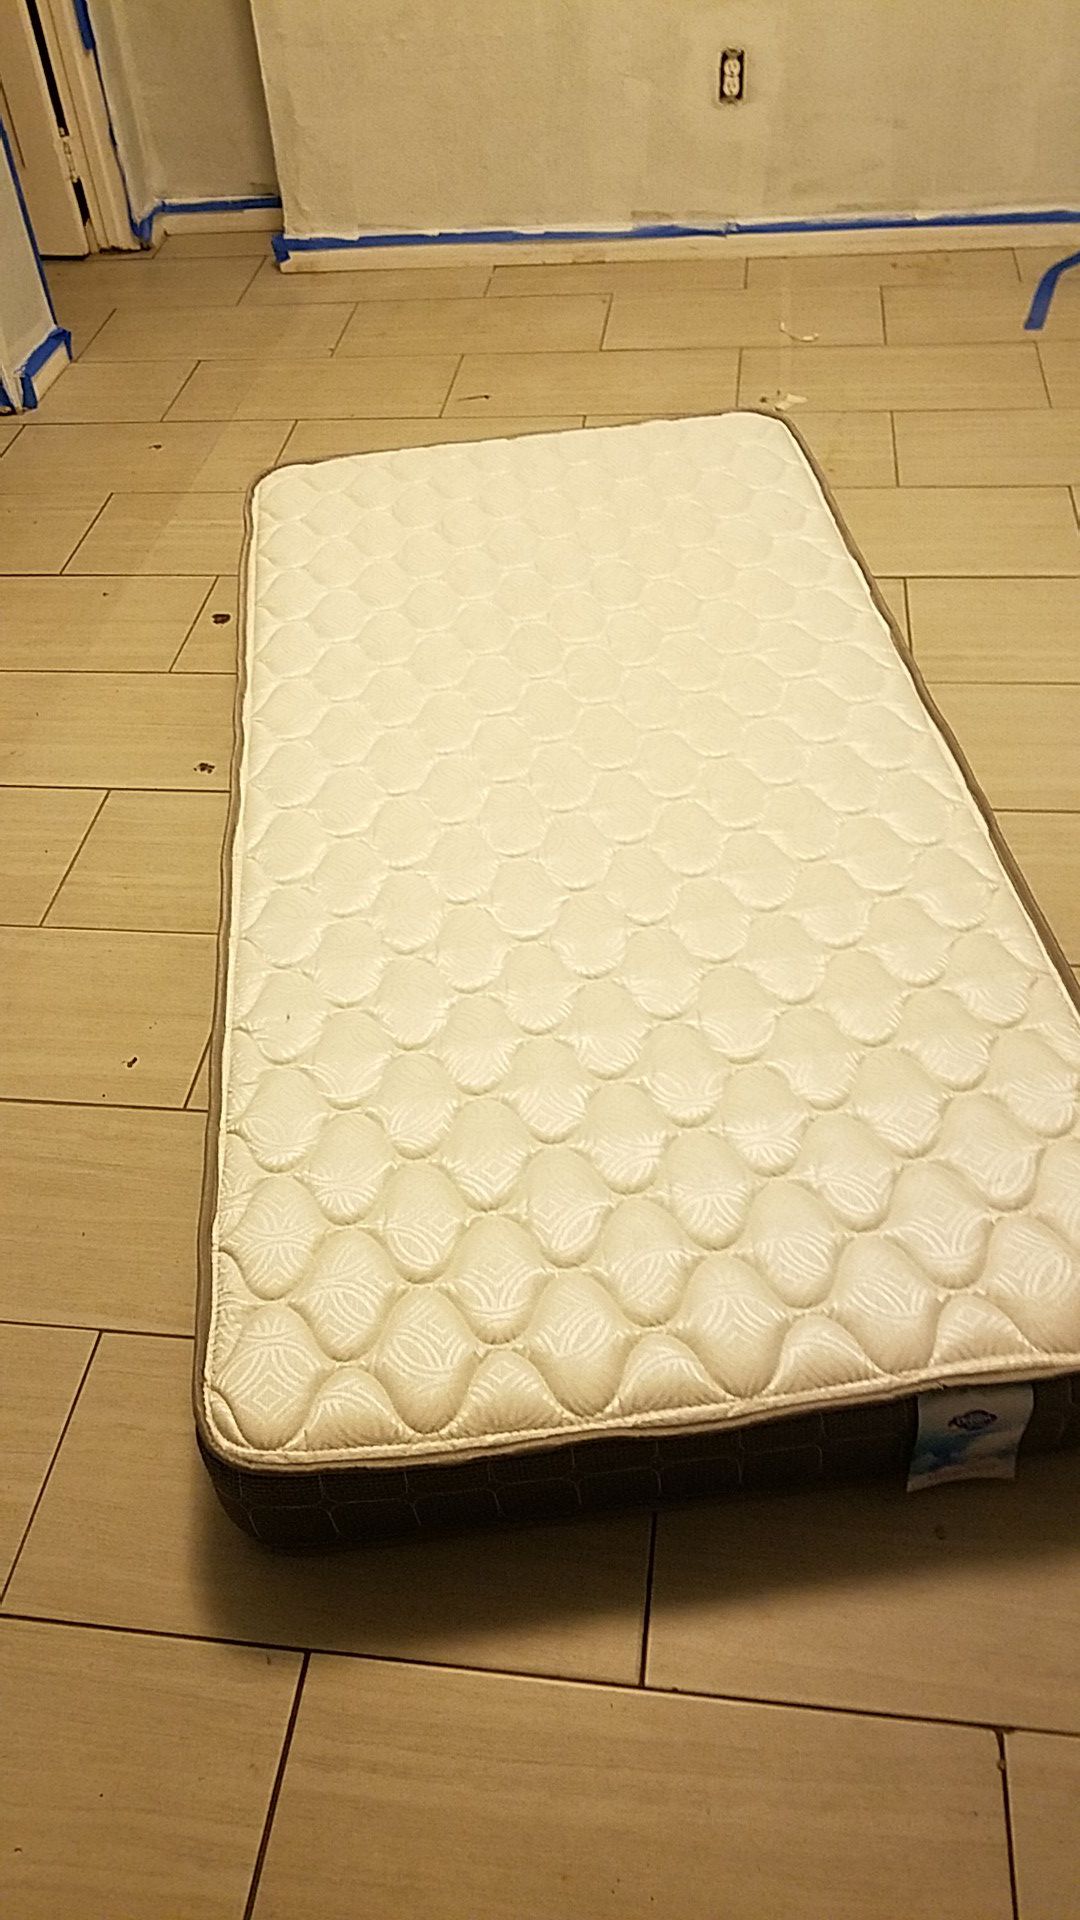 Twin mattress